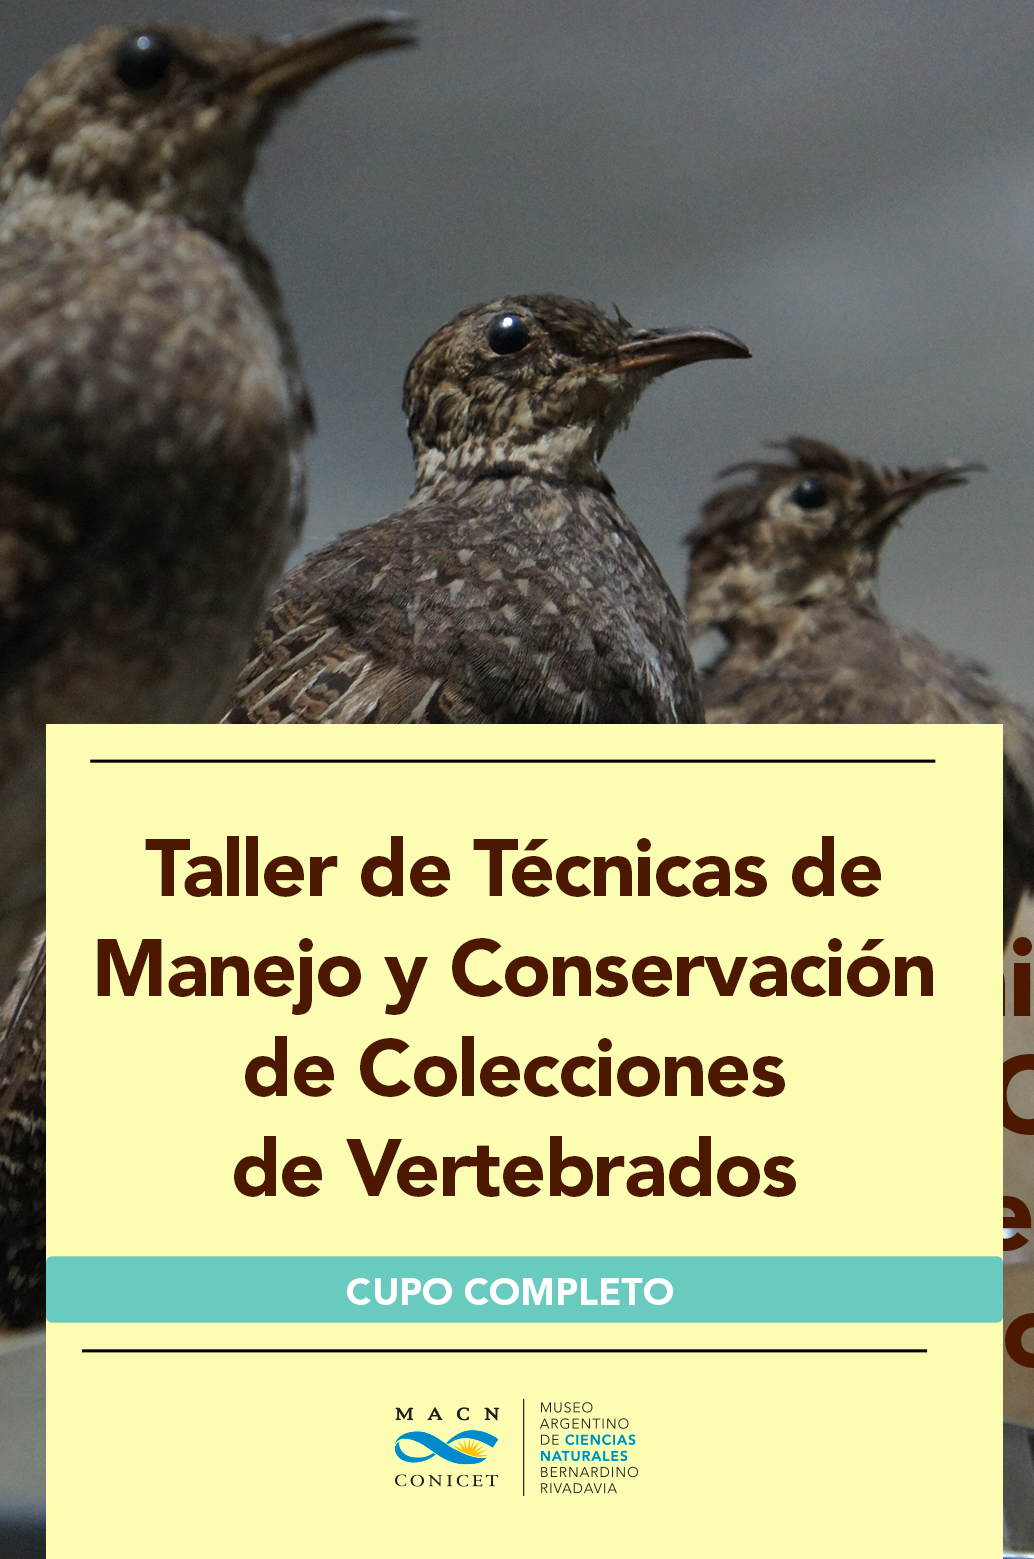 conservacion-vertebrados-web_cupo